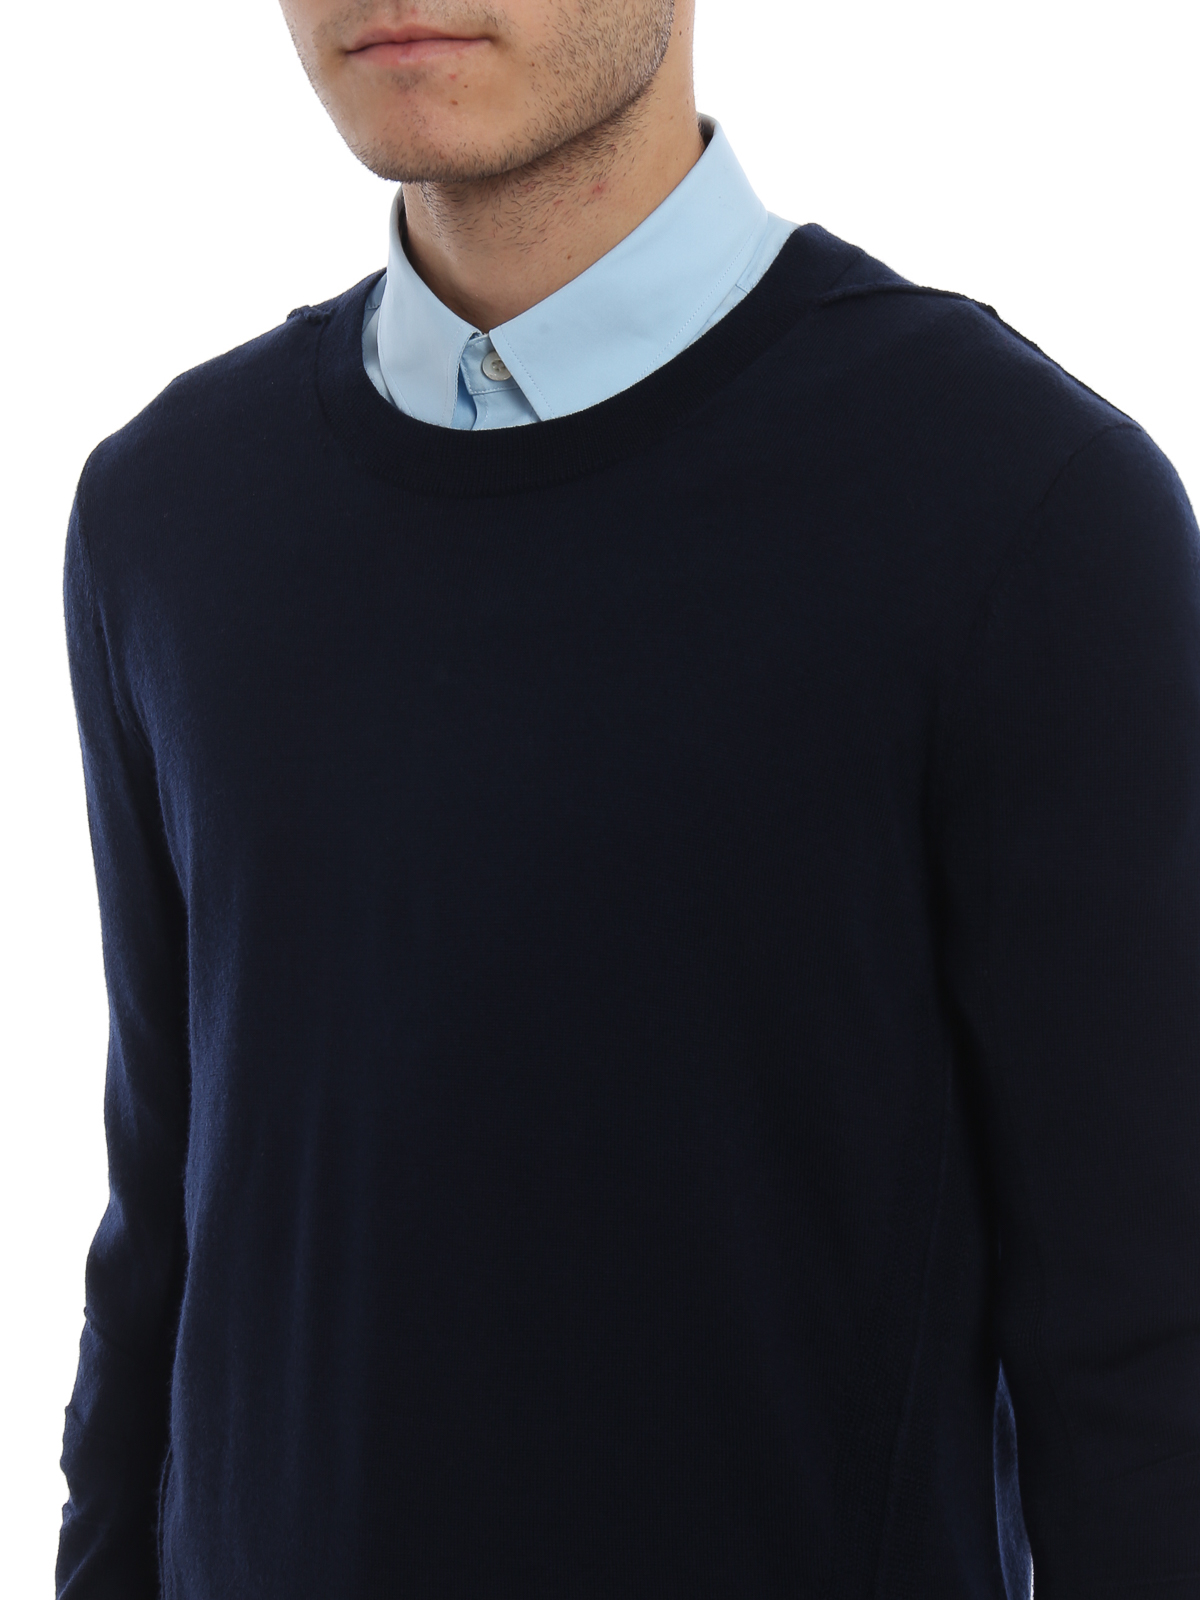 Intarsia Wool Sweater in Blue - Burberry